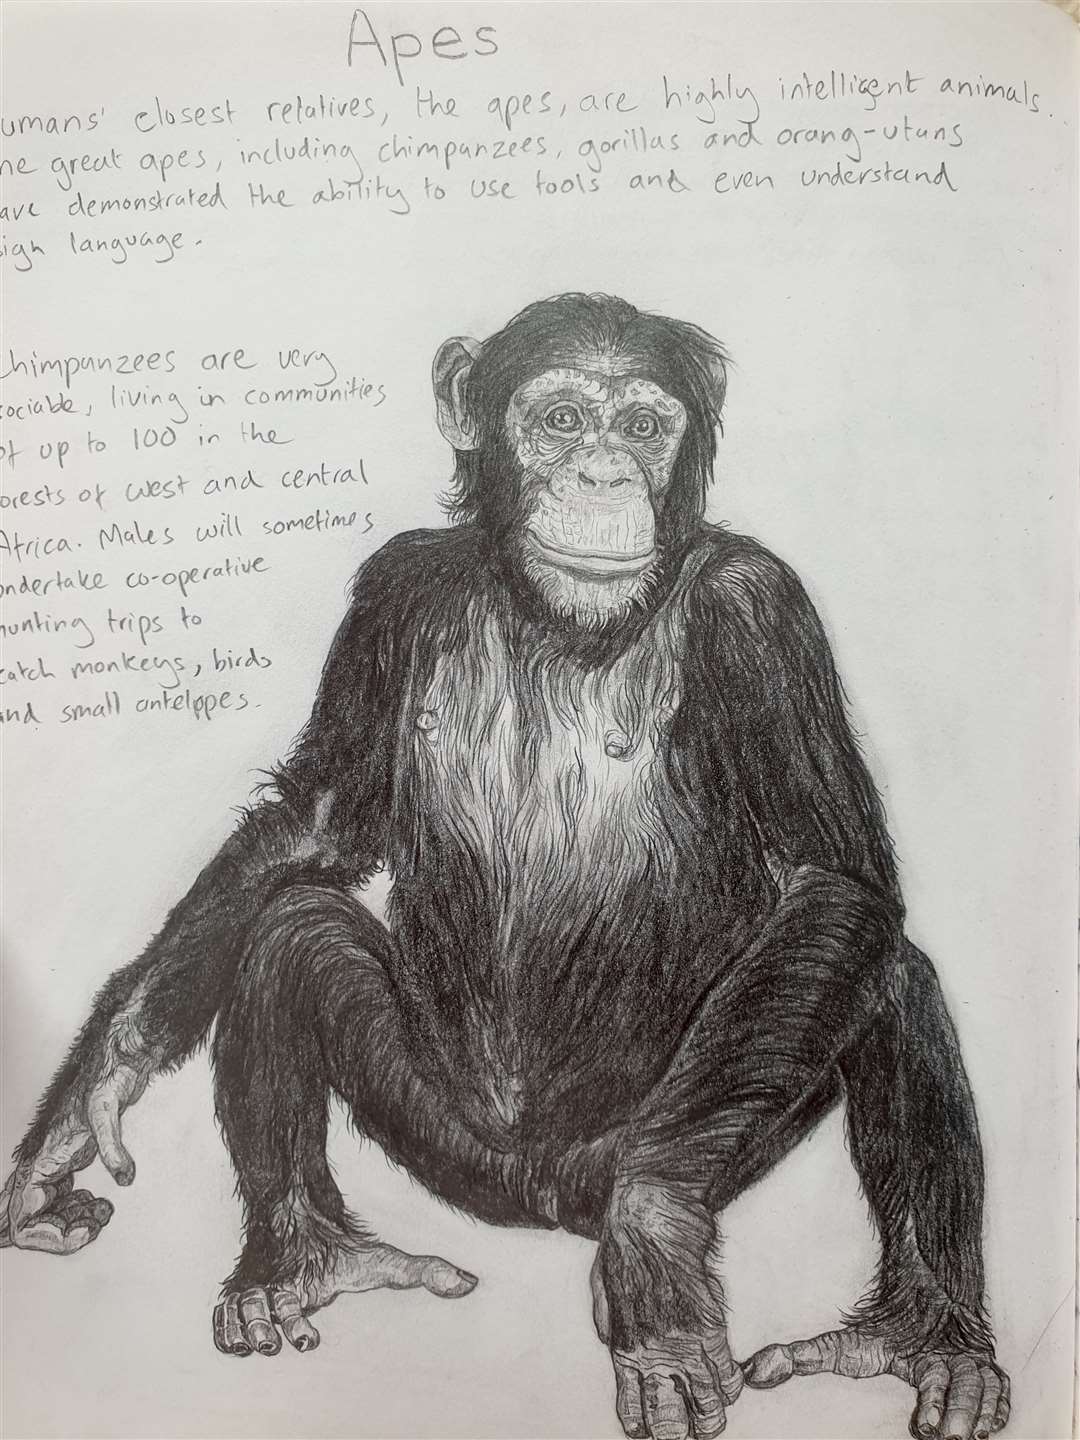 Mr Gabbatiss’s final drawing was a chimpanzee (Josh Gabbatiss/PA)